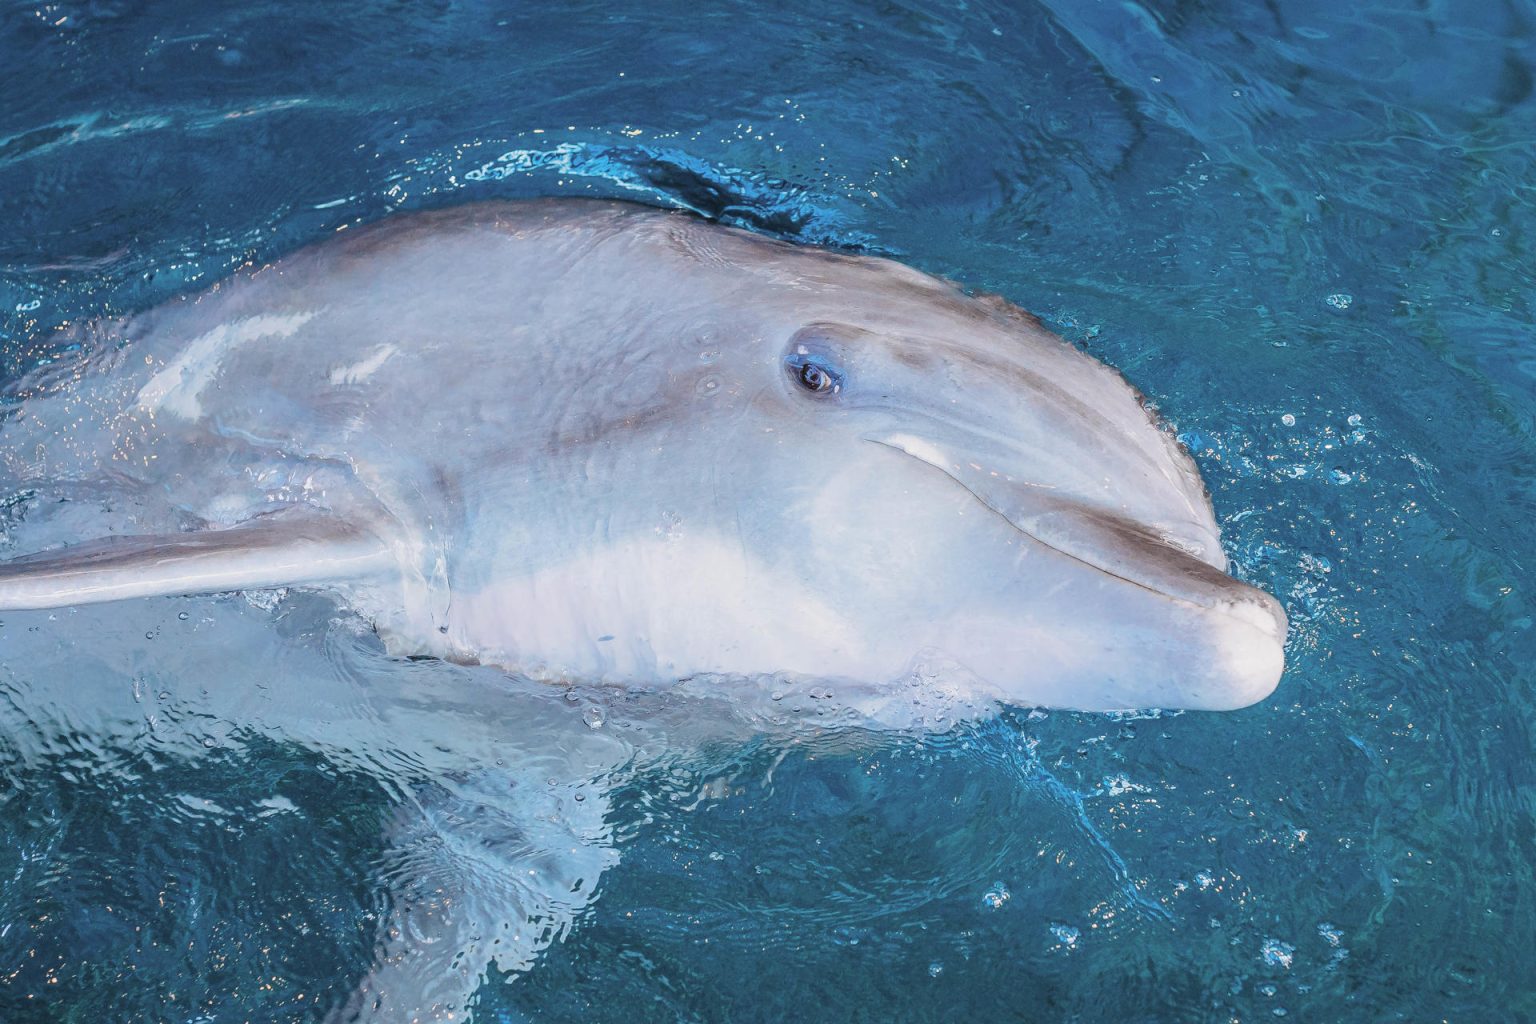 Fotografía cedida sin fechar de Clearwater Marine Aquarium (CMA) donde se muestra al delfín Hemingway, en Florida (EEUU). El delfín Hemingway, uno de los ejemplares de su especie en cautividad más populares del sur de Estados Unidos, murió este lunes en el centro de recuperación de especies marinas Clearwater Marine Aquarium (CMA) de Florida. EFE/ Clearwater Marine Aquarium /SOLO USO EDITORIAL/NO VENTAS/SOLO DISPONIBLE PARA ILUSTRAR LA NOTICIA QUE ACOMPAÑA/CRÉDITO OBLIGATORIO